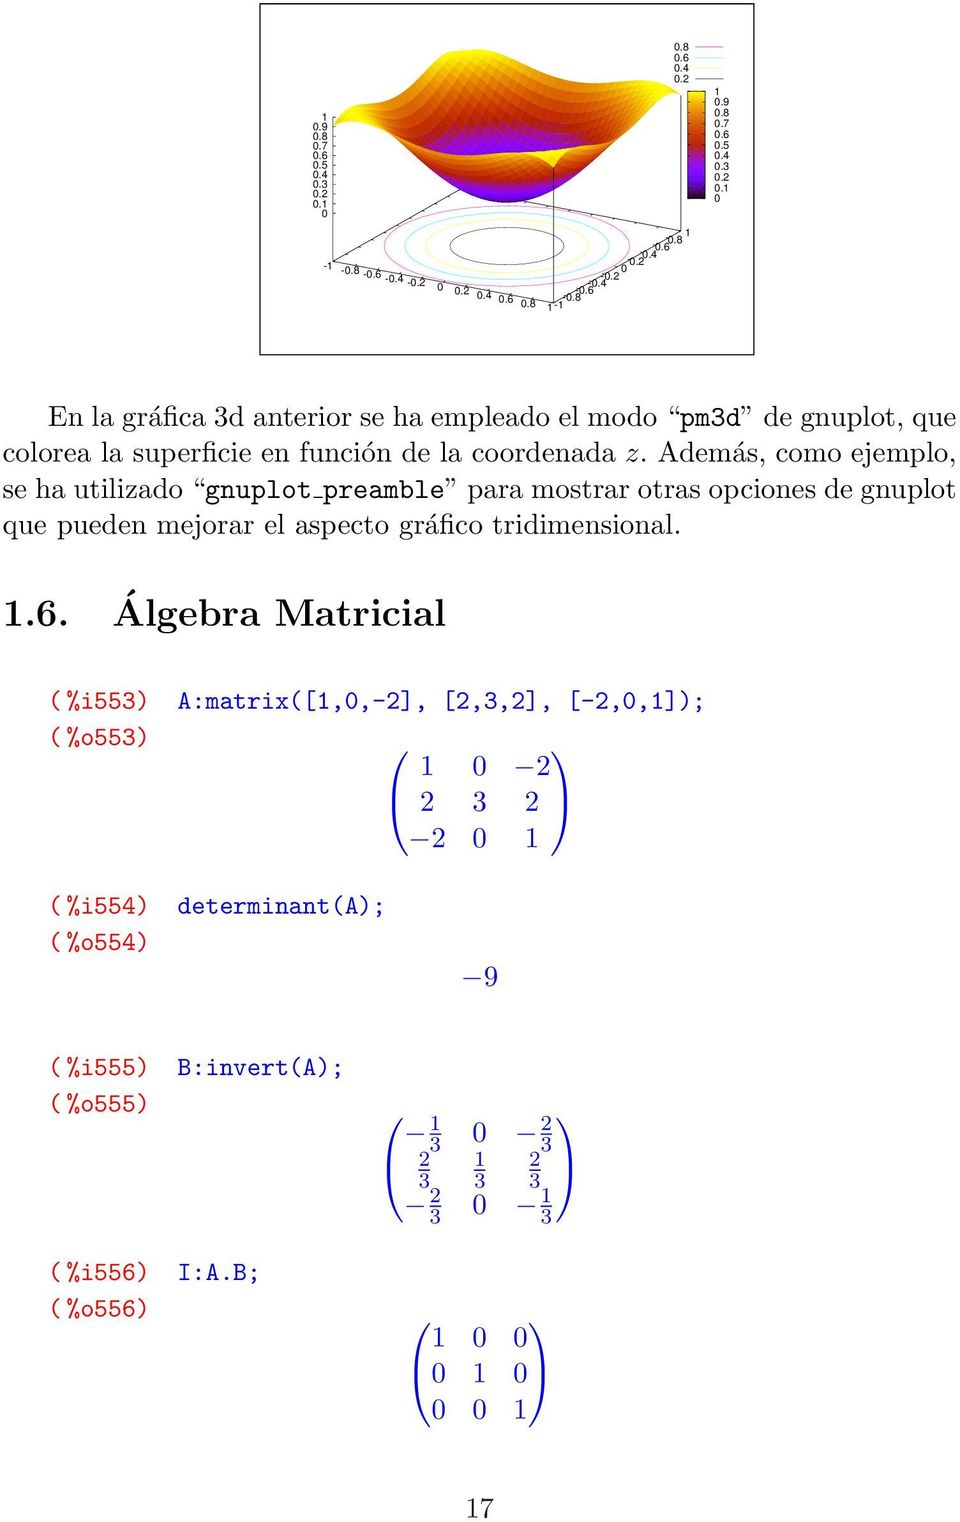 Álgebra Matricial ( %i553) A:matrix([1,0,-], [,3,], [-,0,1]); ( %o553) 1 0 3 0 1 ( %i554) determinant(a); ( %o554) 9 ( %i555) B:invert(A); ( %o555) 1 3 0 3 1 3 3 3